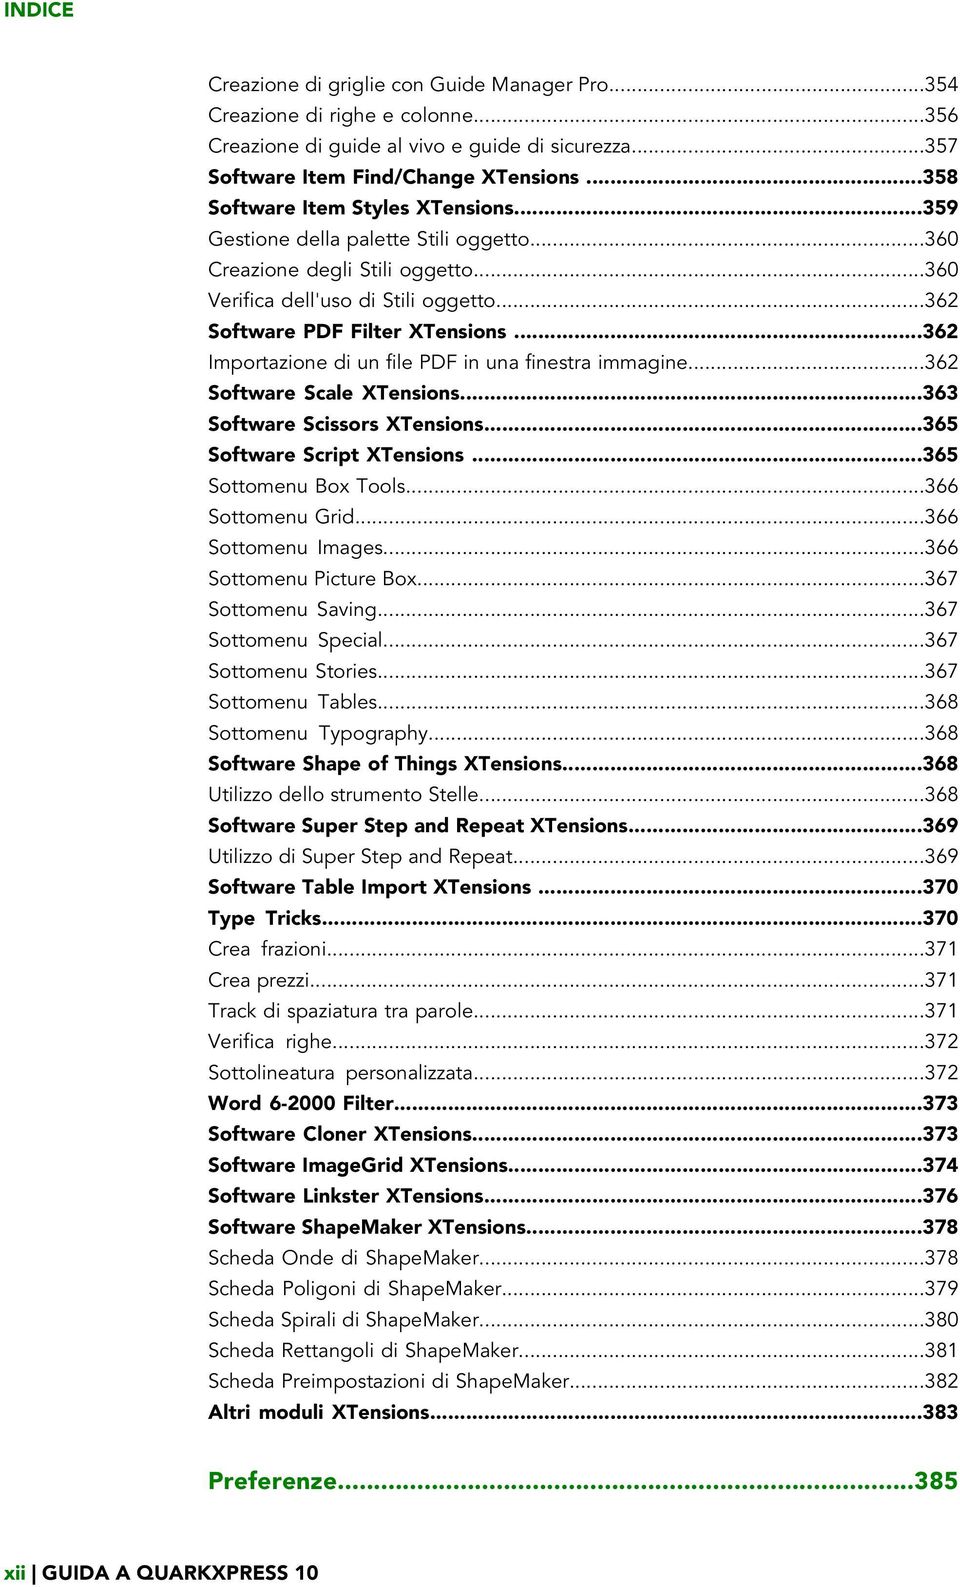 ..362 Importazione di un file PDF in una finestra immagine...362 Software Scale XTensions...363 Software Scissors XTensions...365 Software Script XTensions...365 Sottomenu Box Tools.